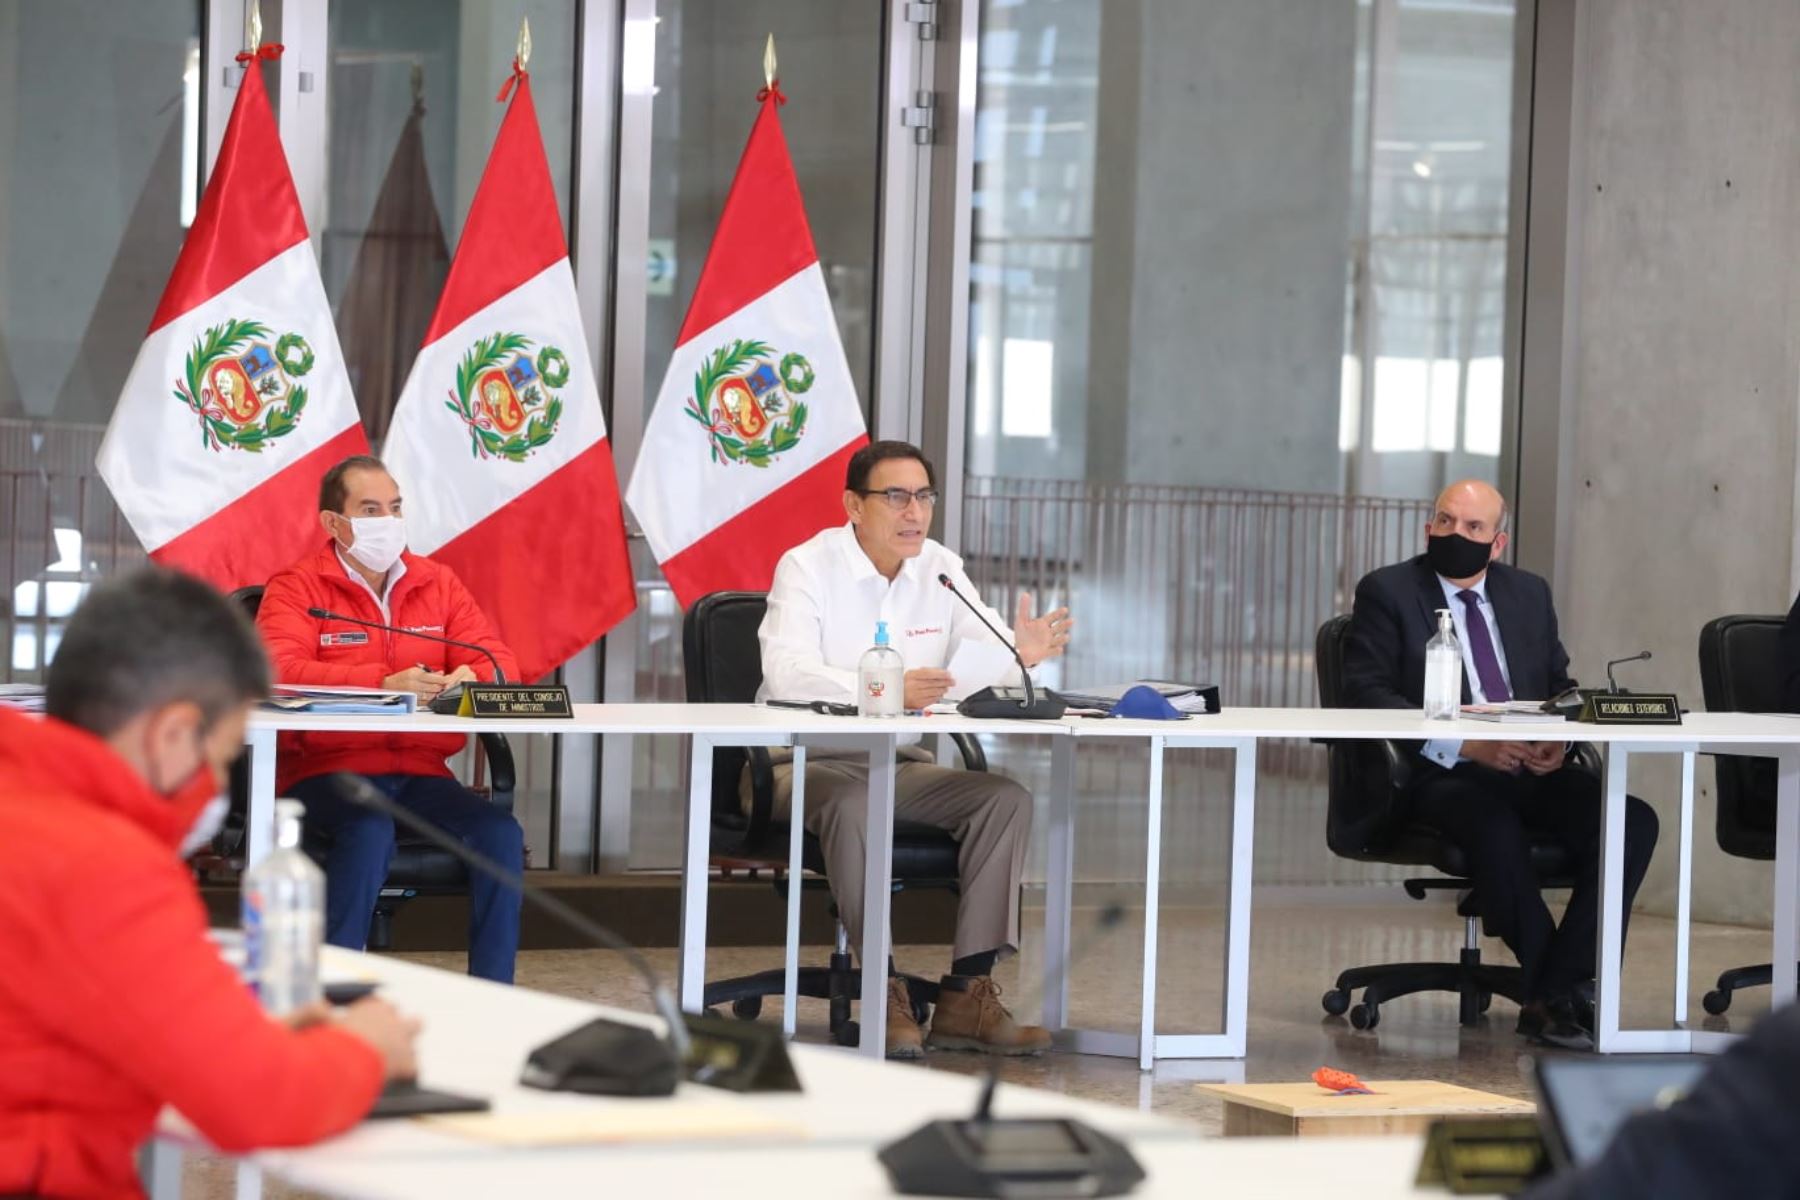 Conferencia de prensa del Presidente Martín Vizcarra y su gabinete de ministros.

Foto: ANDINA/Presidencia